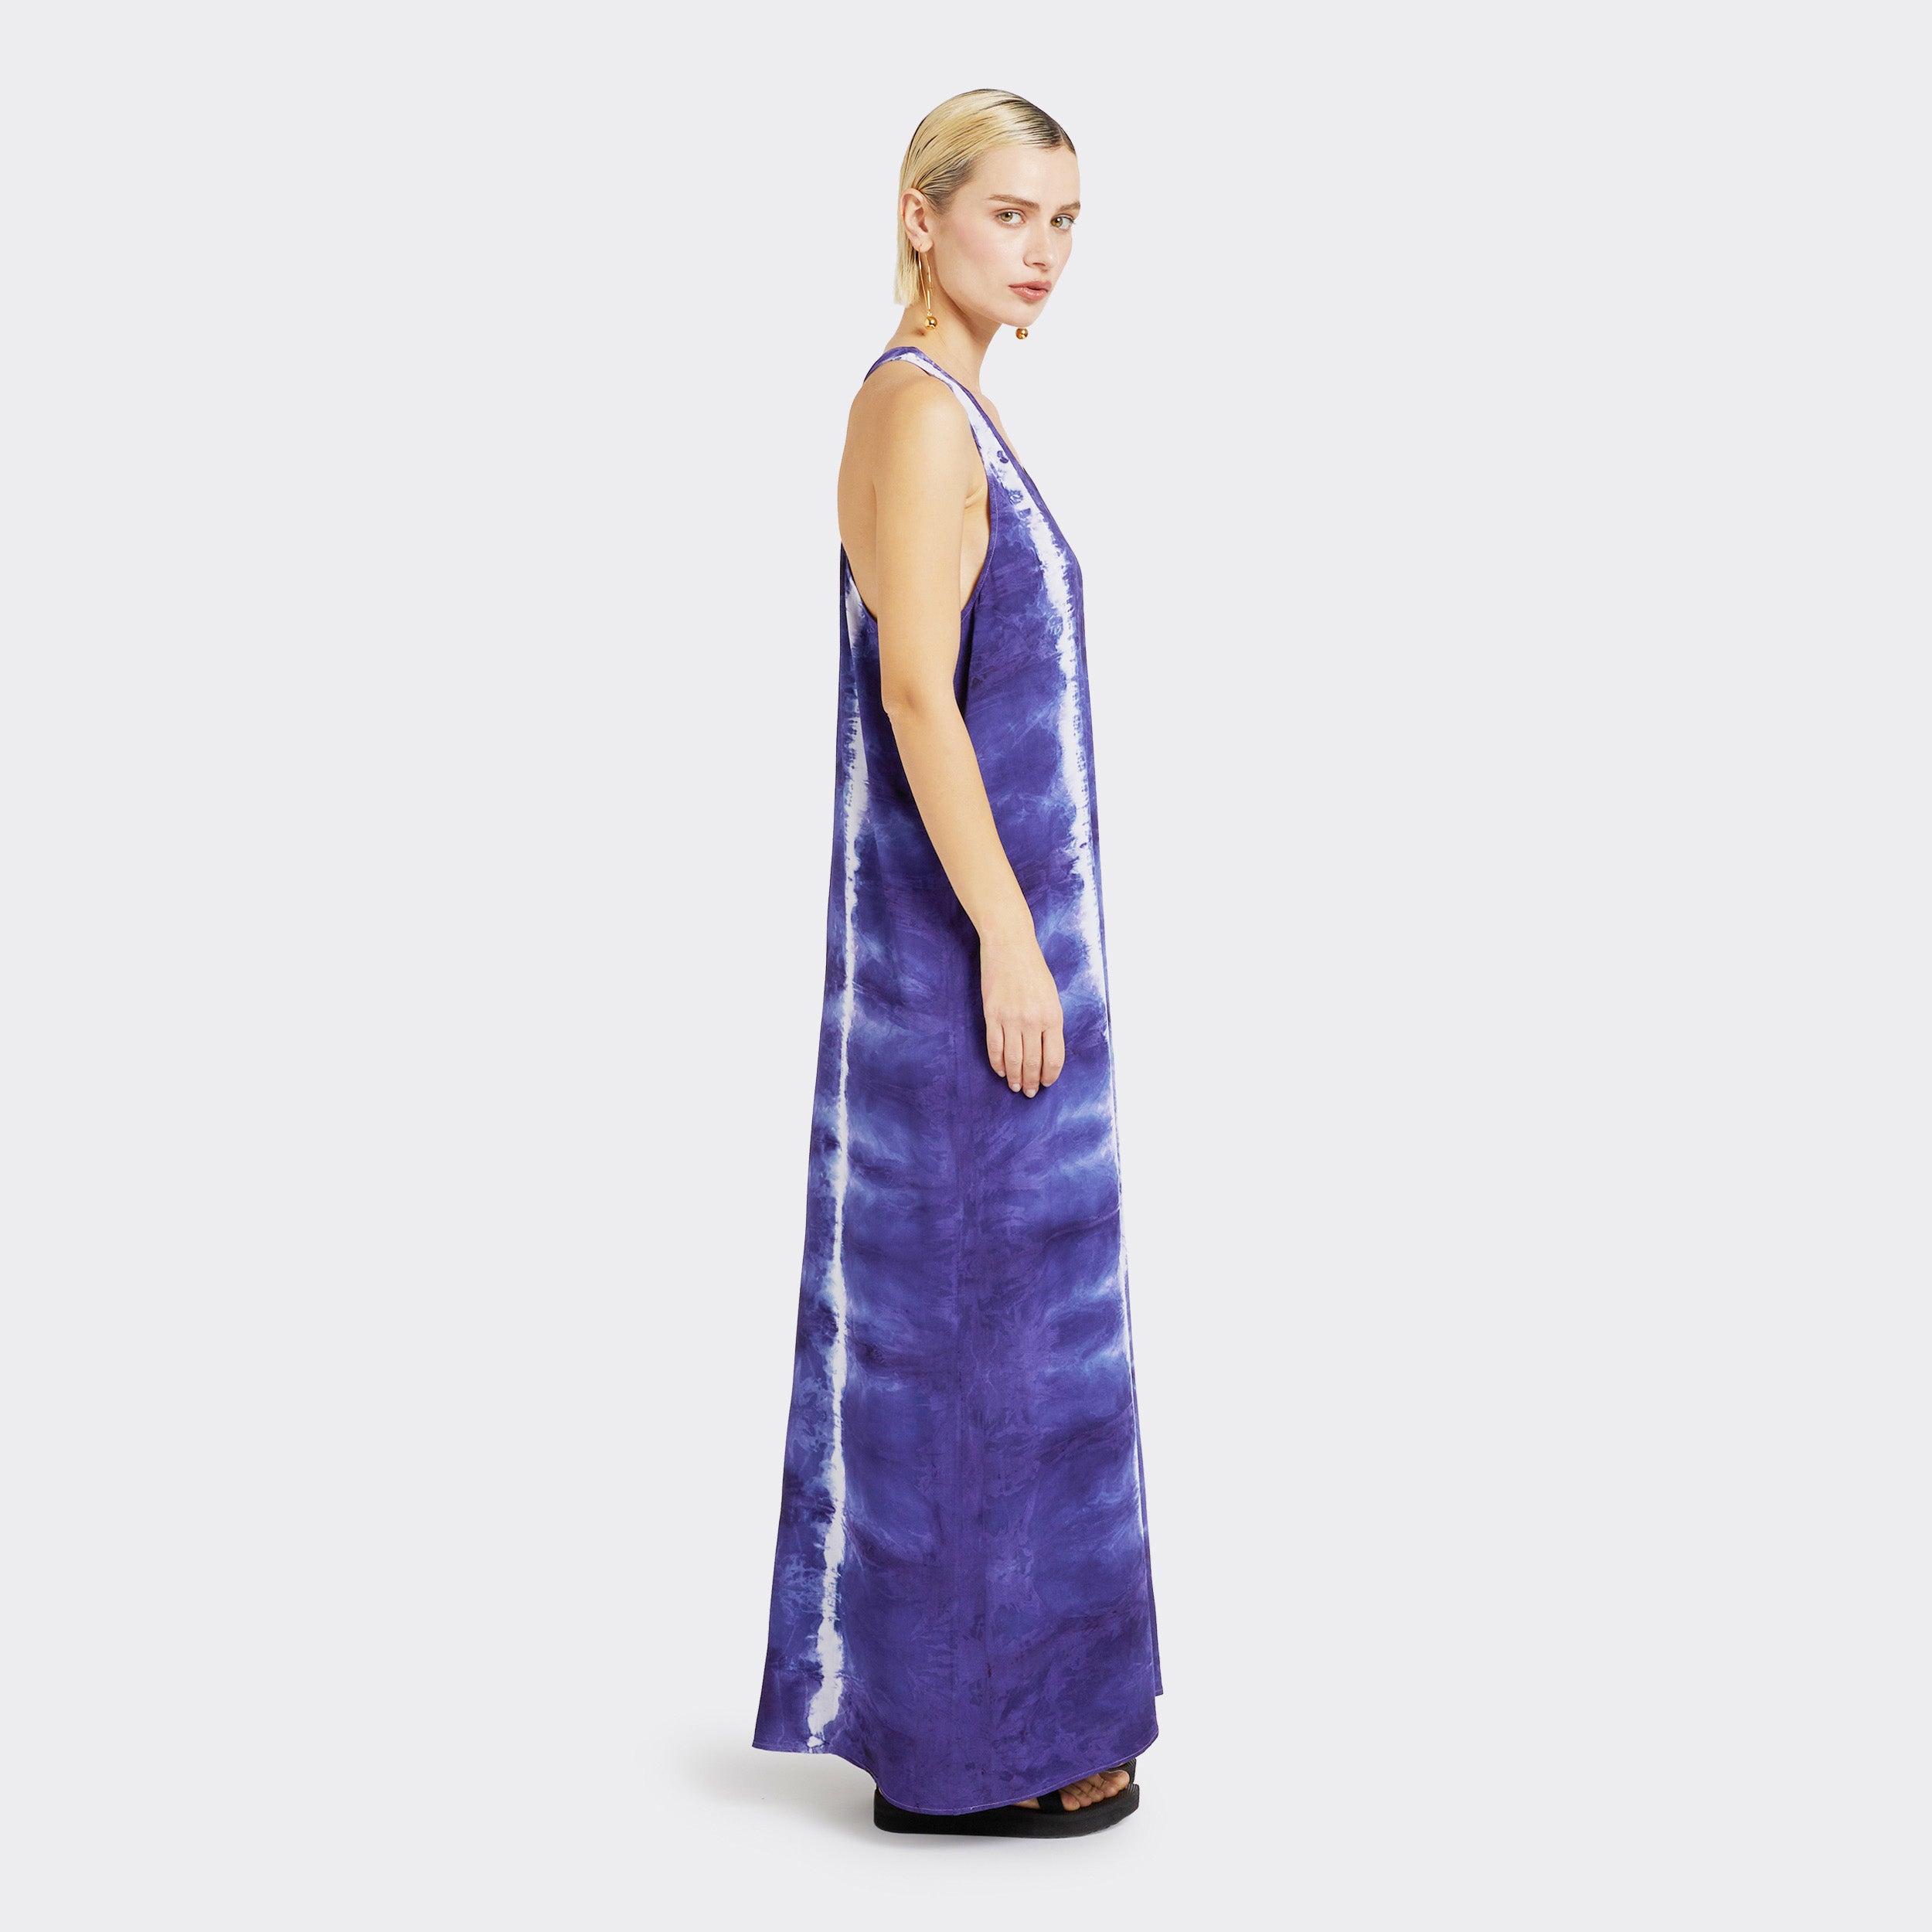 Model wears Long Dress in Tie Dye Soft Blue.